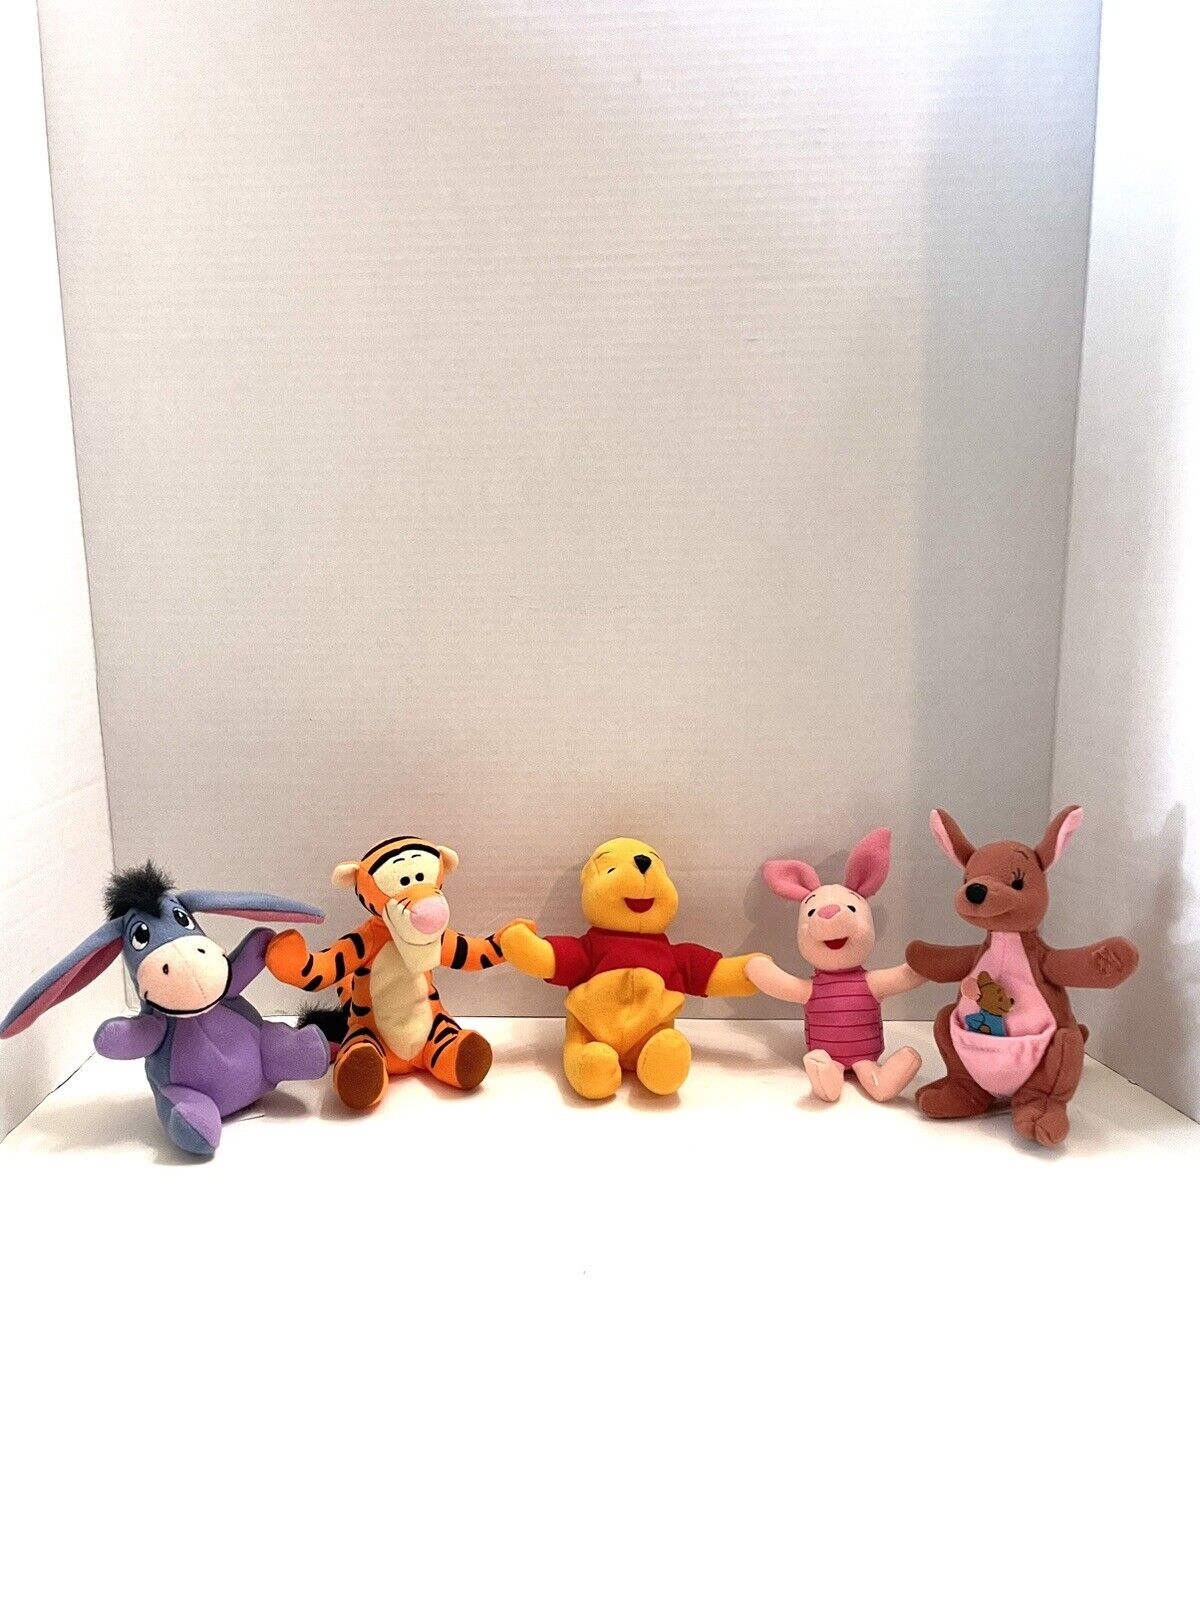 Vintage ~ Disney MATTEL plush toys ~ Tigger, Pooh, Piglet, Eeyore, Kanga & Roo